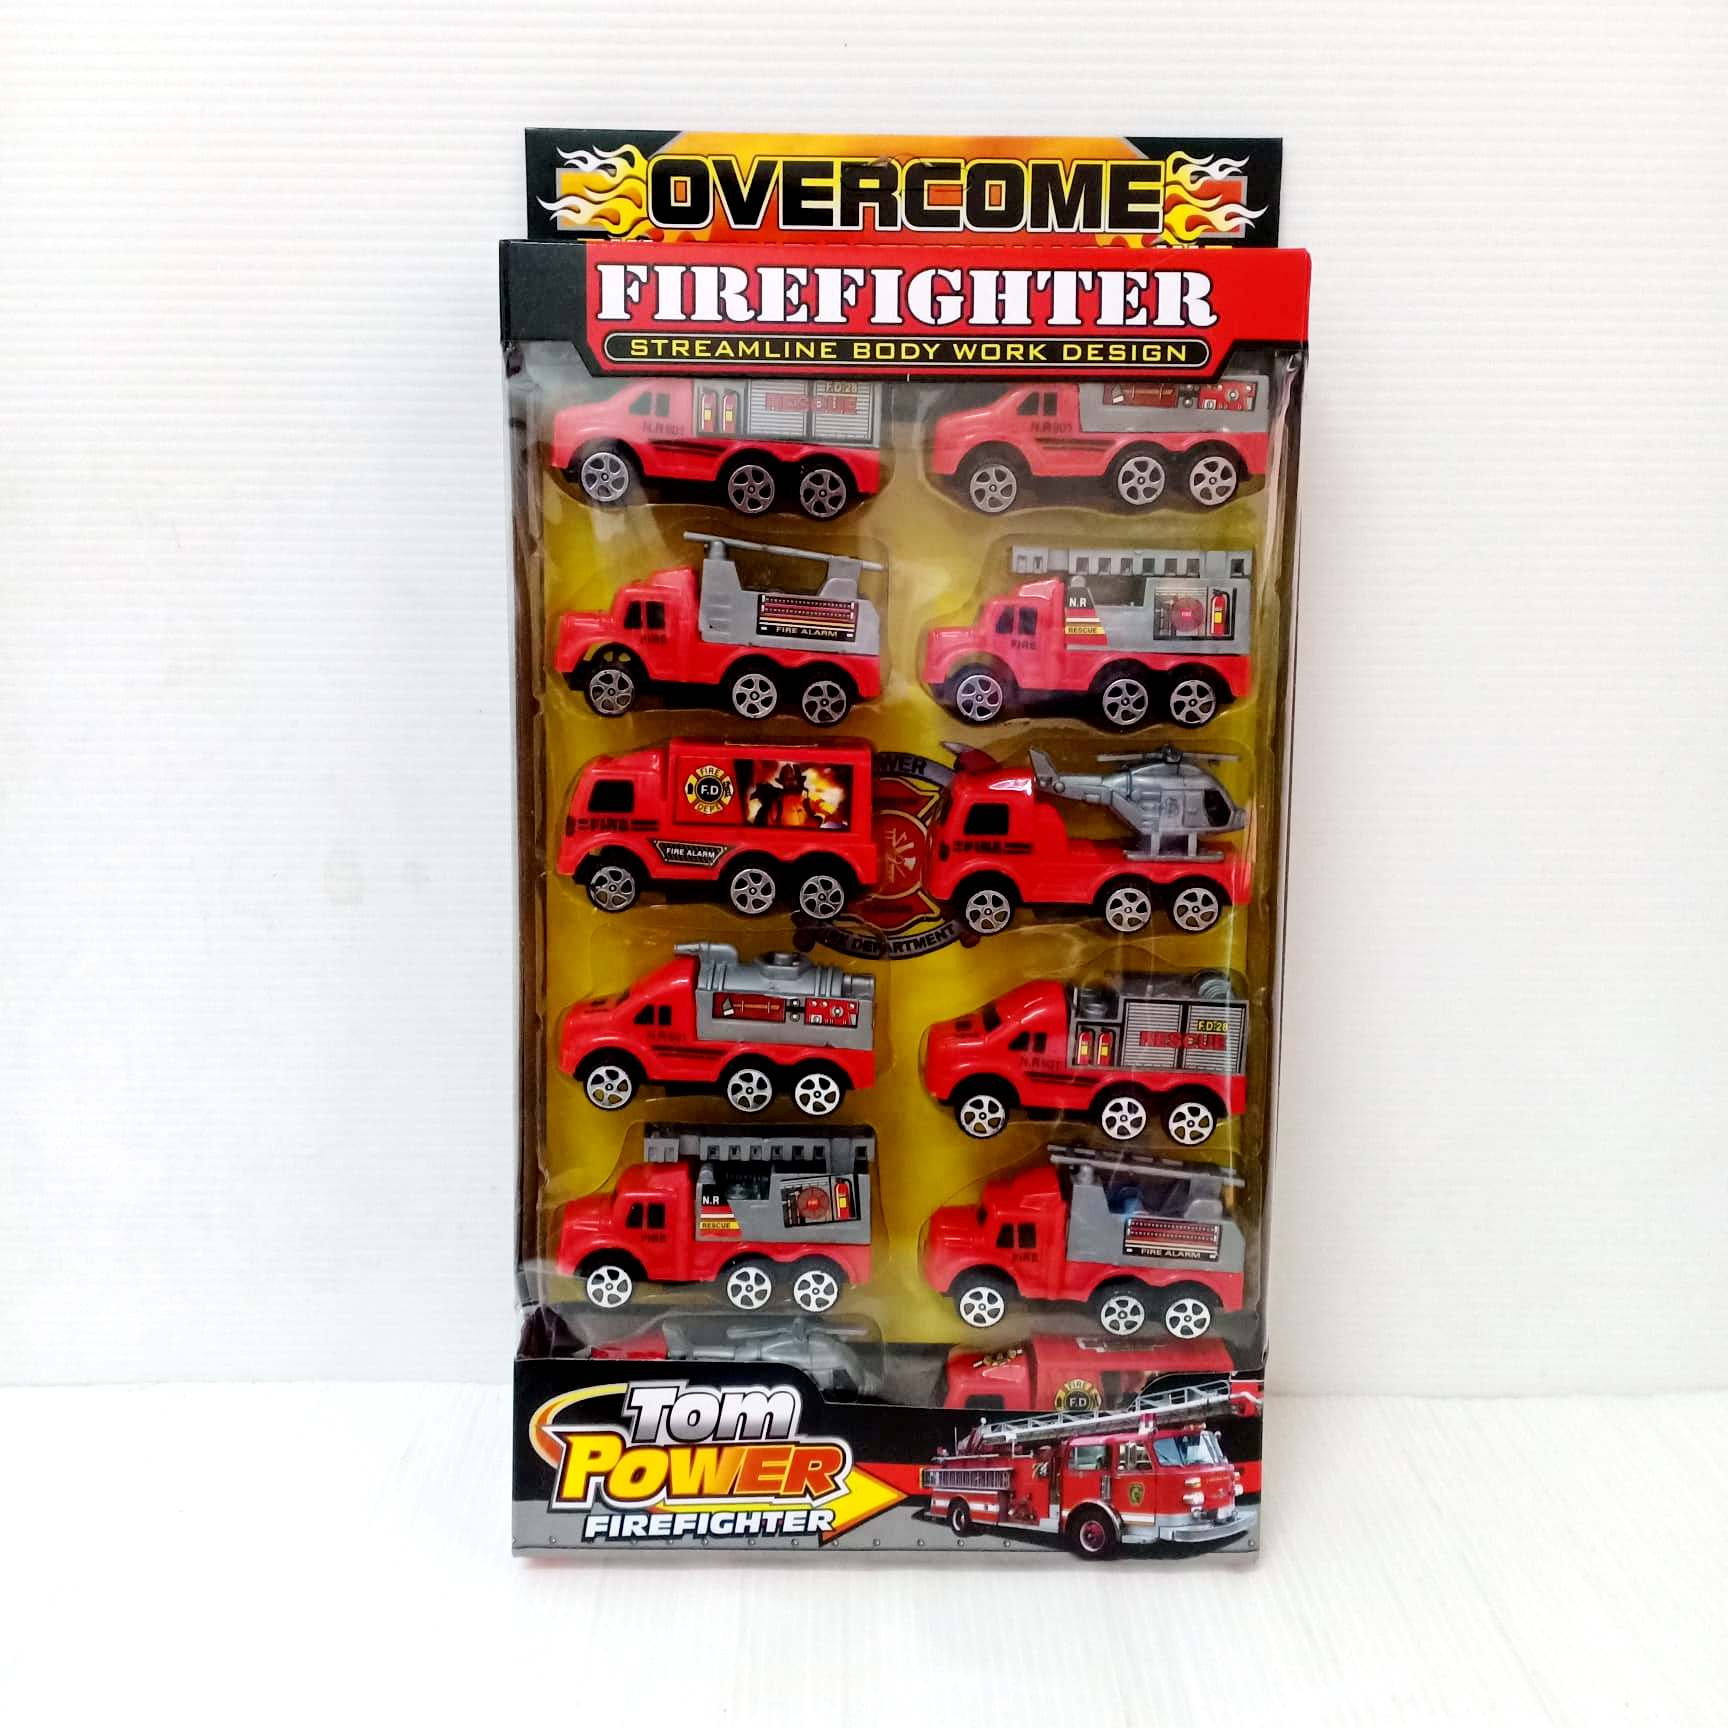 รถดับเพลิง รถ 12 คัน Fire Fighter Car Set มีลาน วิ่งได้ ได้ทั้ง 12 คัน สินค้าได้ตามรูปแน่นอน รับรอง ไม่ผิดหวัง ราคาถูก